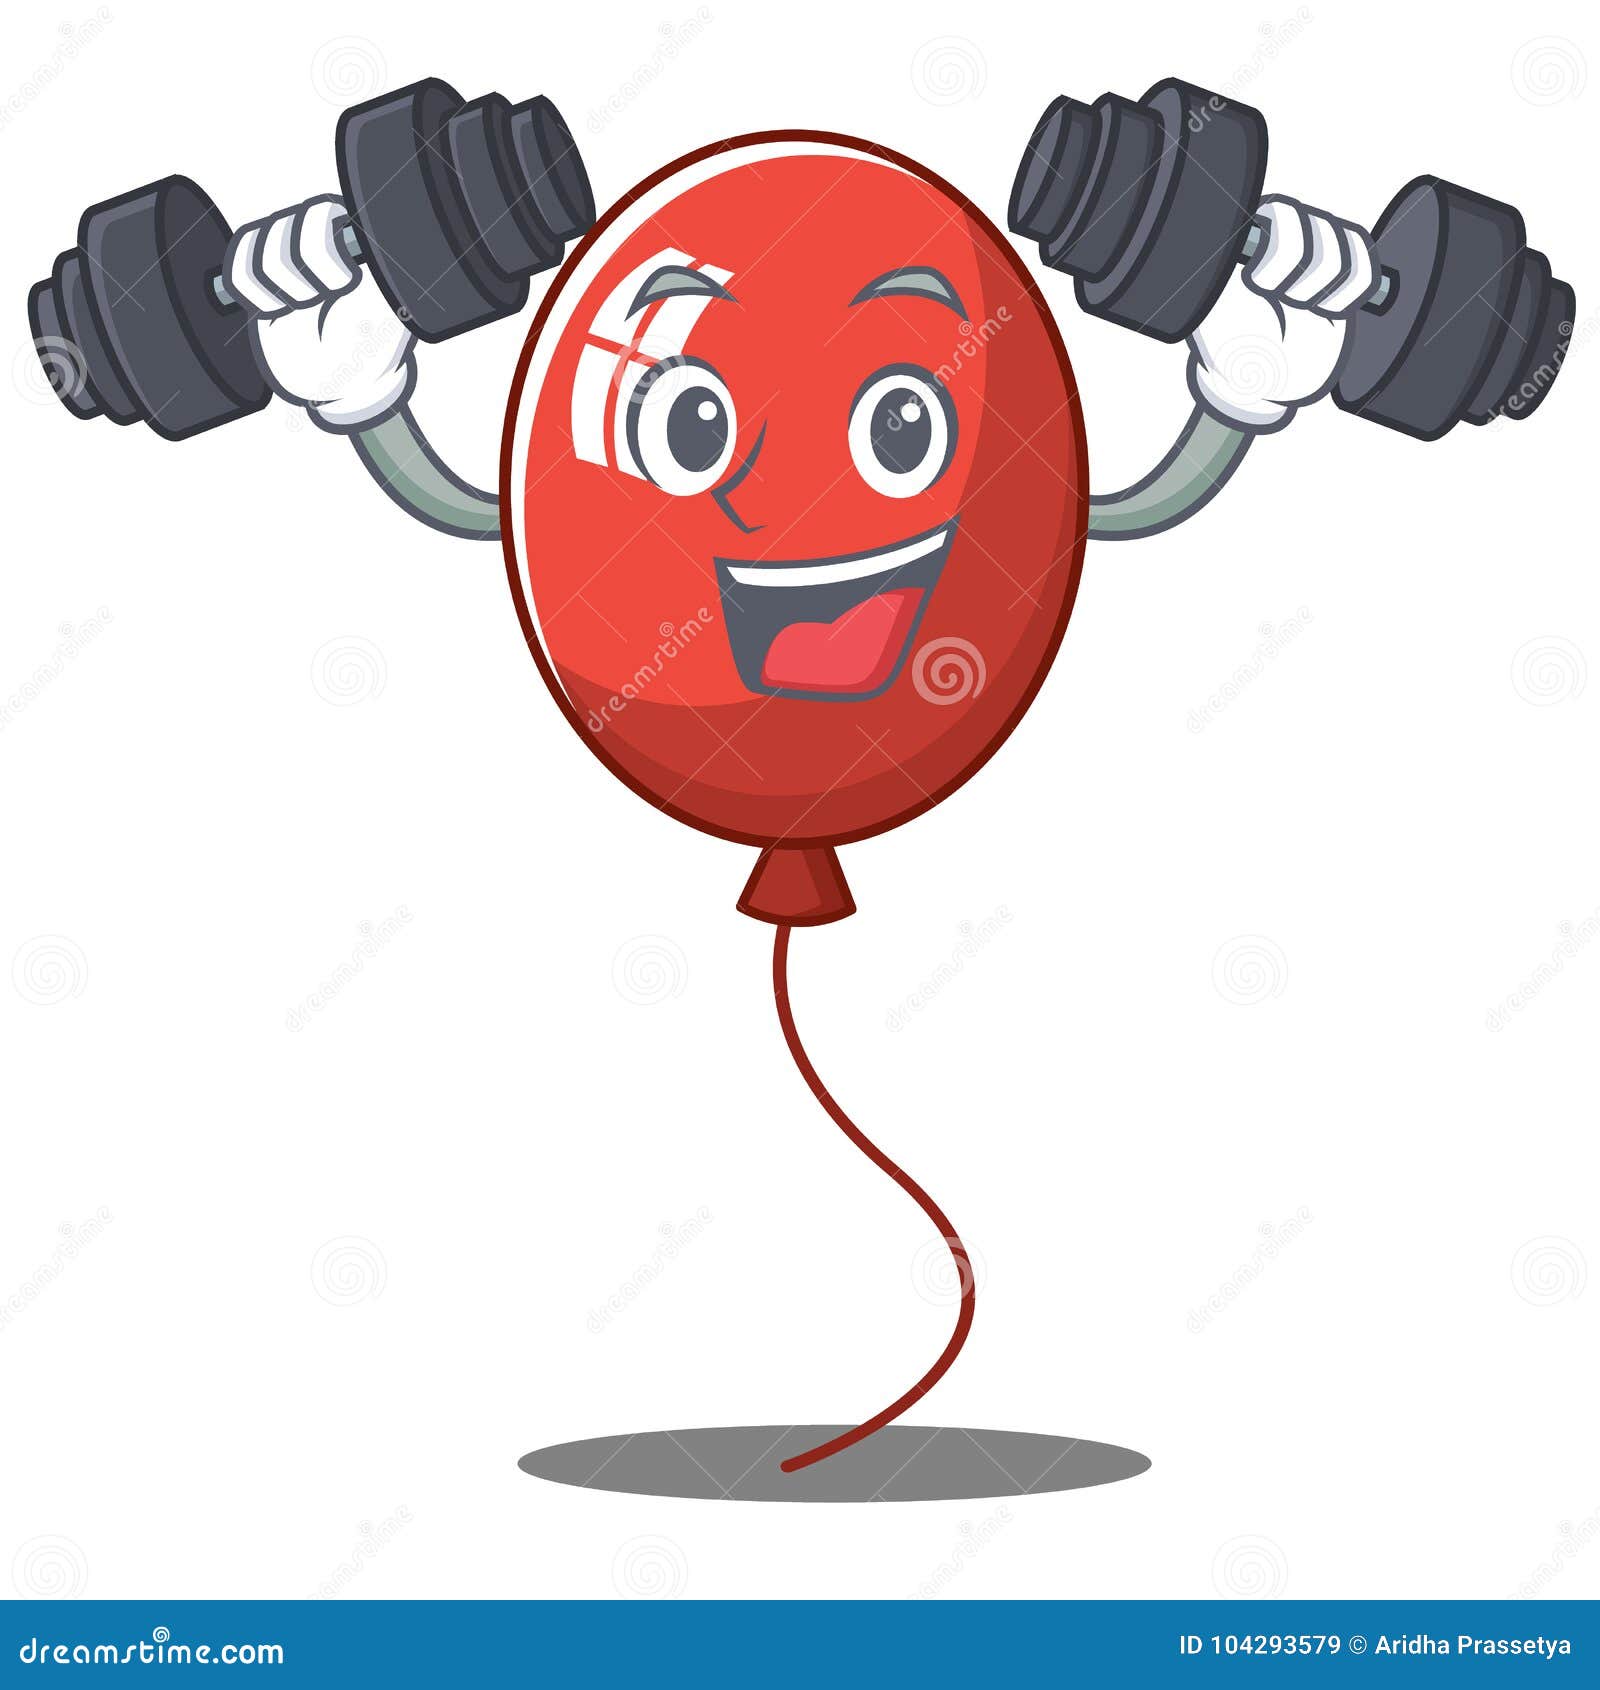 Fitness Balloon Character Cartoon Style Stock Vector - Illustration of ...